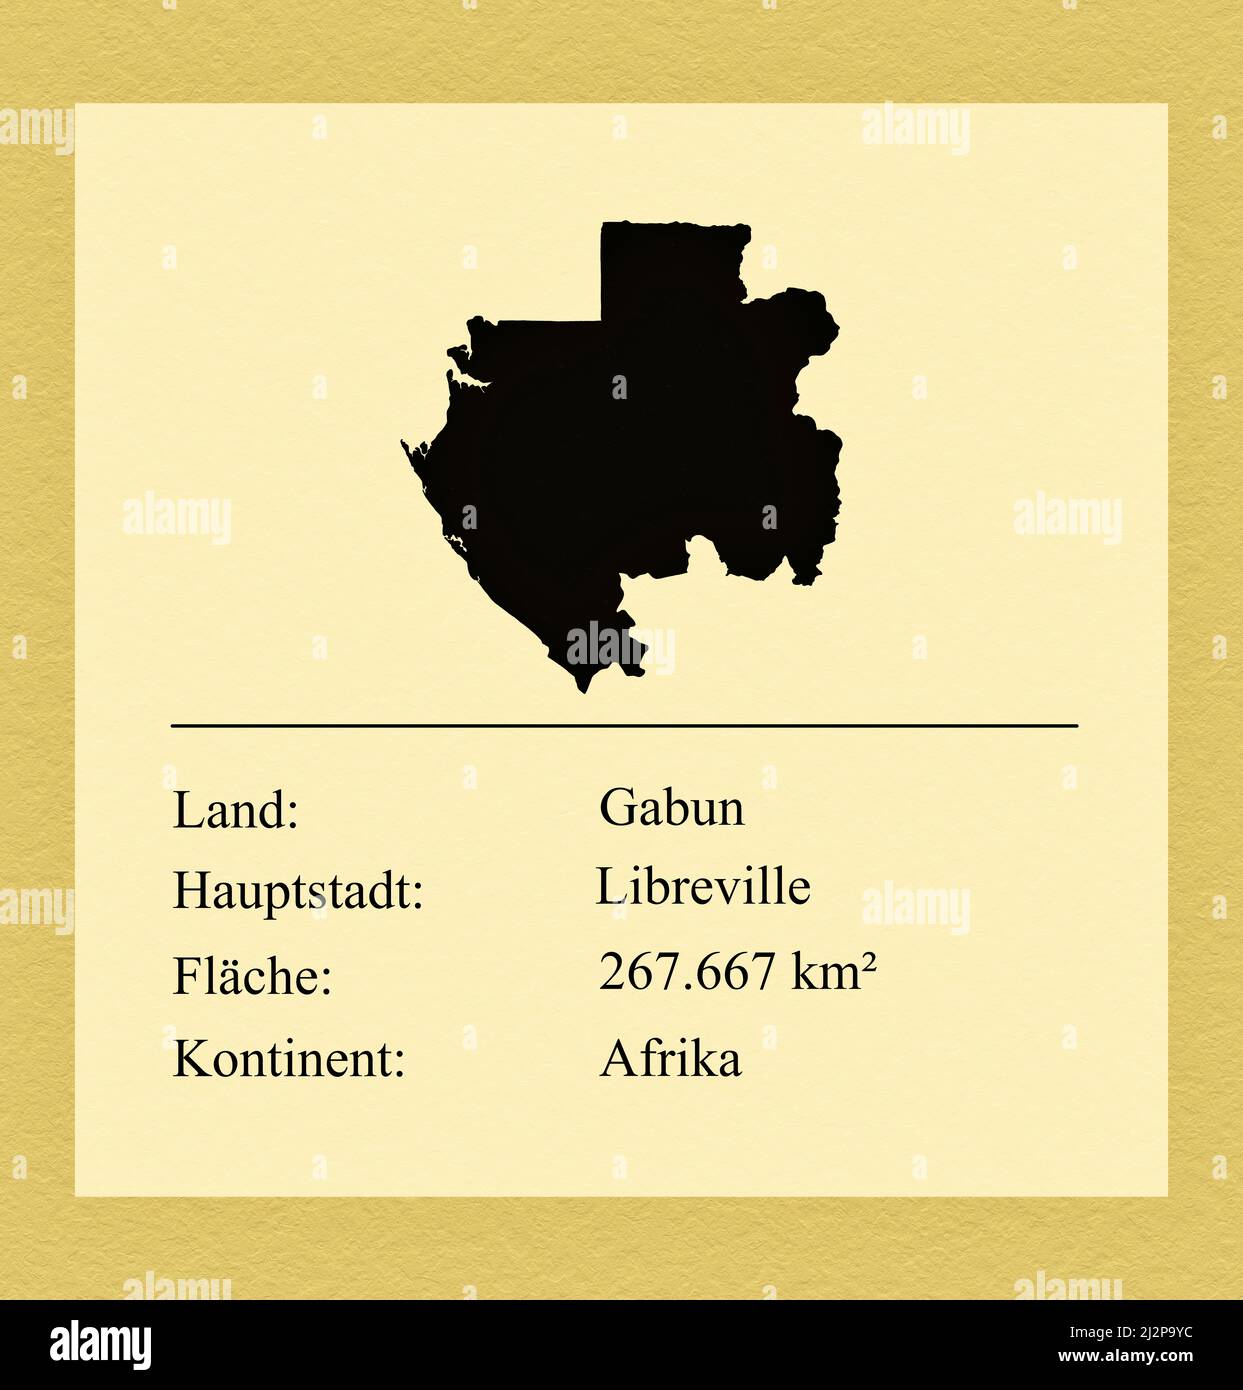 Umrisse des Landes Gabun, darunter ein kleiner Steckbrief mit Ländernamen, Hauptstadt, Fläche und Kontinent Foto Stock